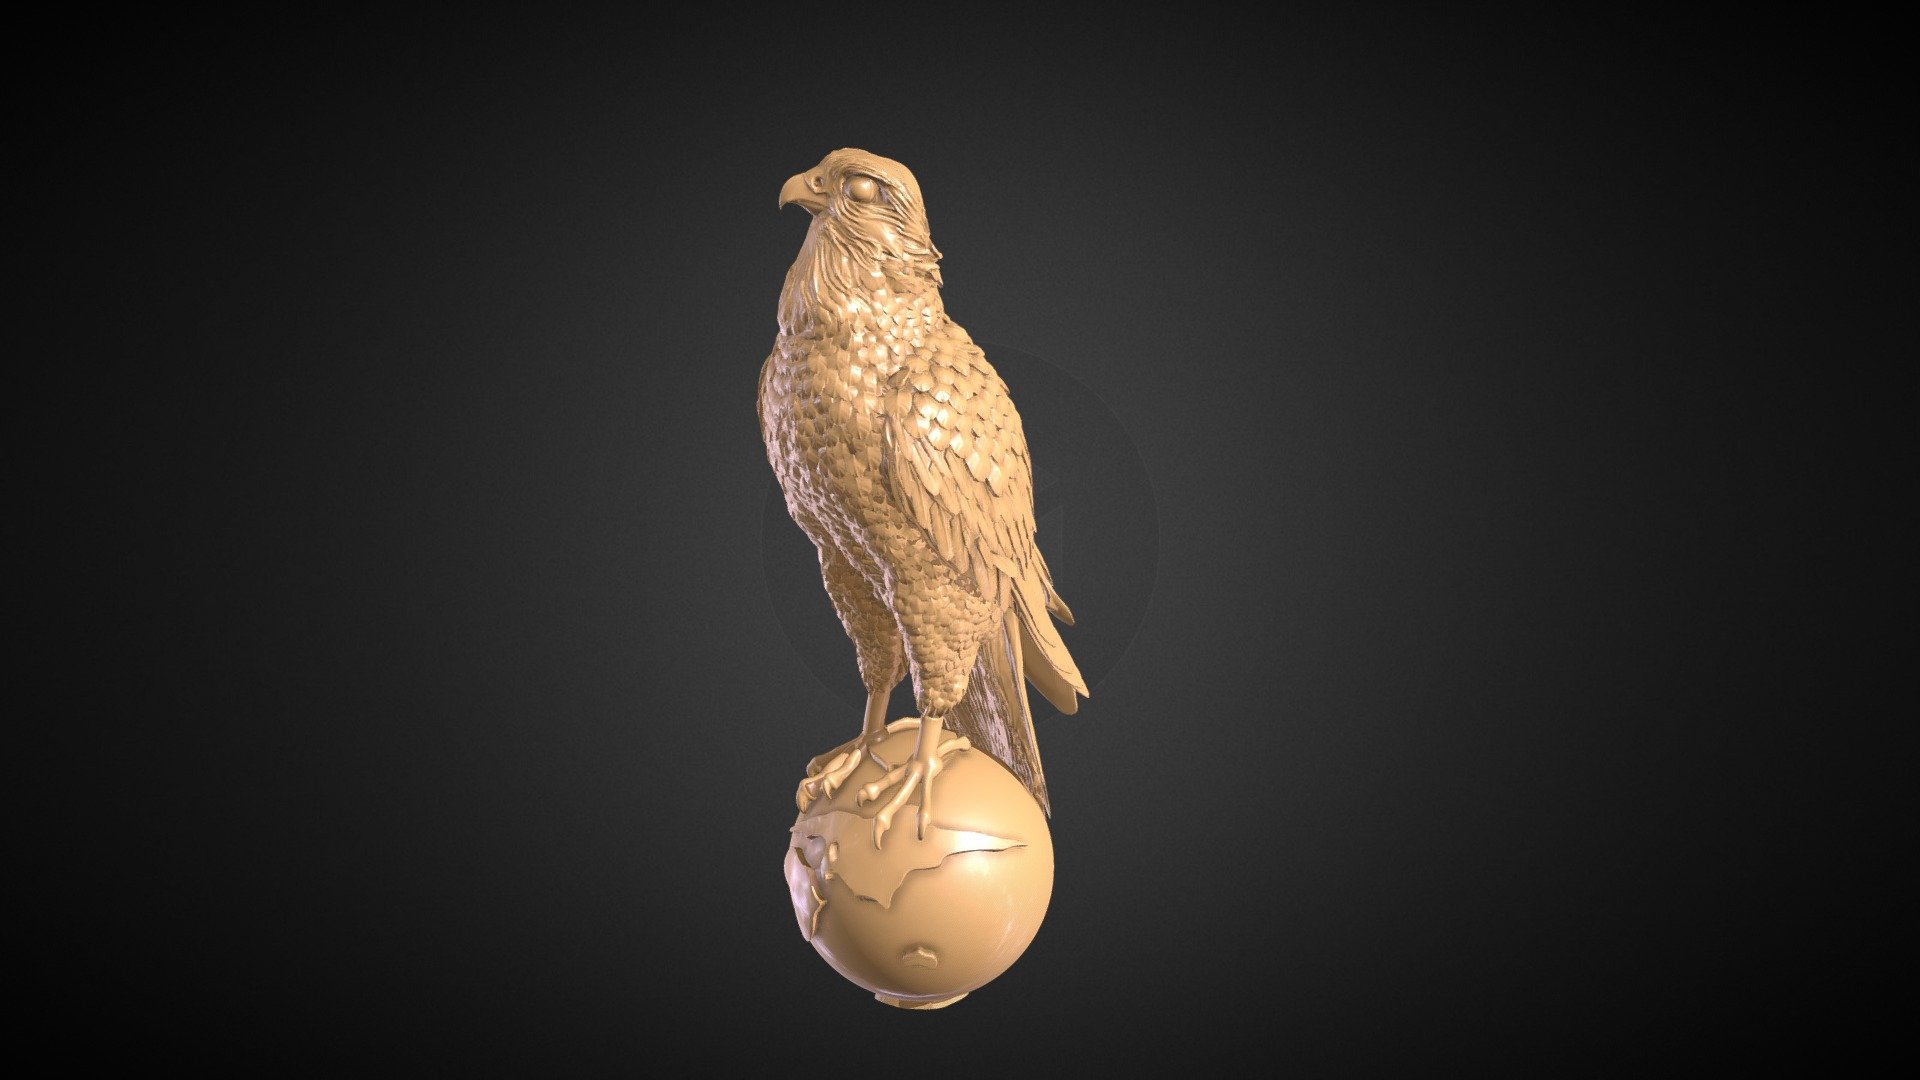 Arabian Falcon model Designed for trophies - Falcon_Globe - 3D model by booni4dee 3d model